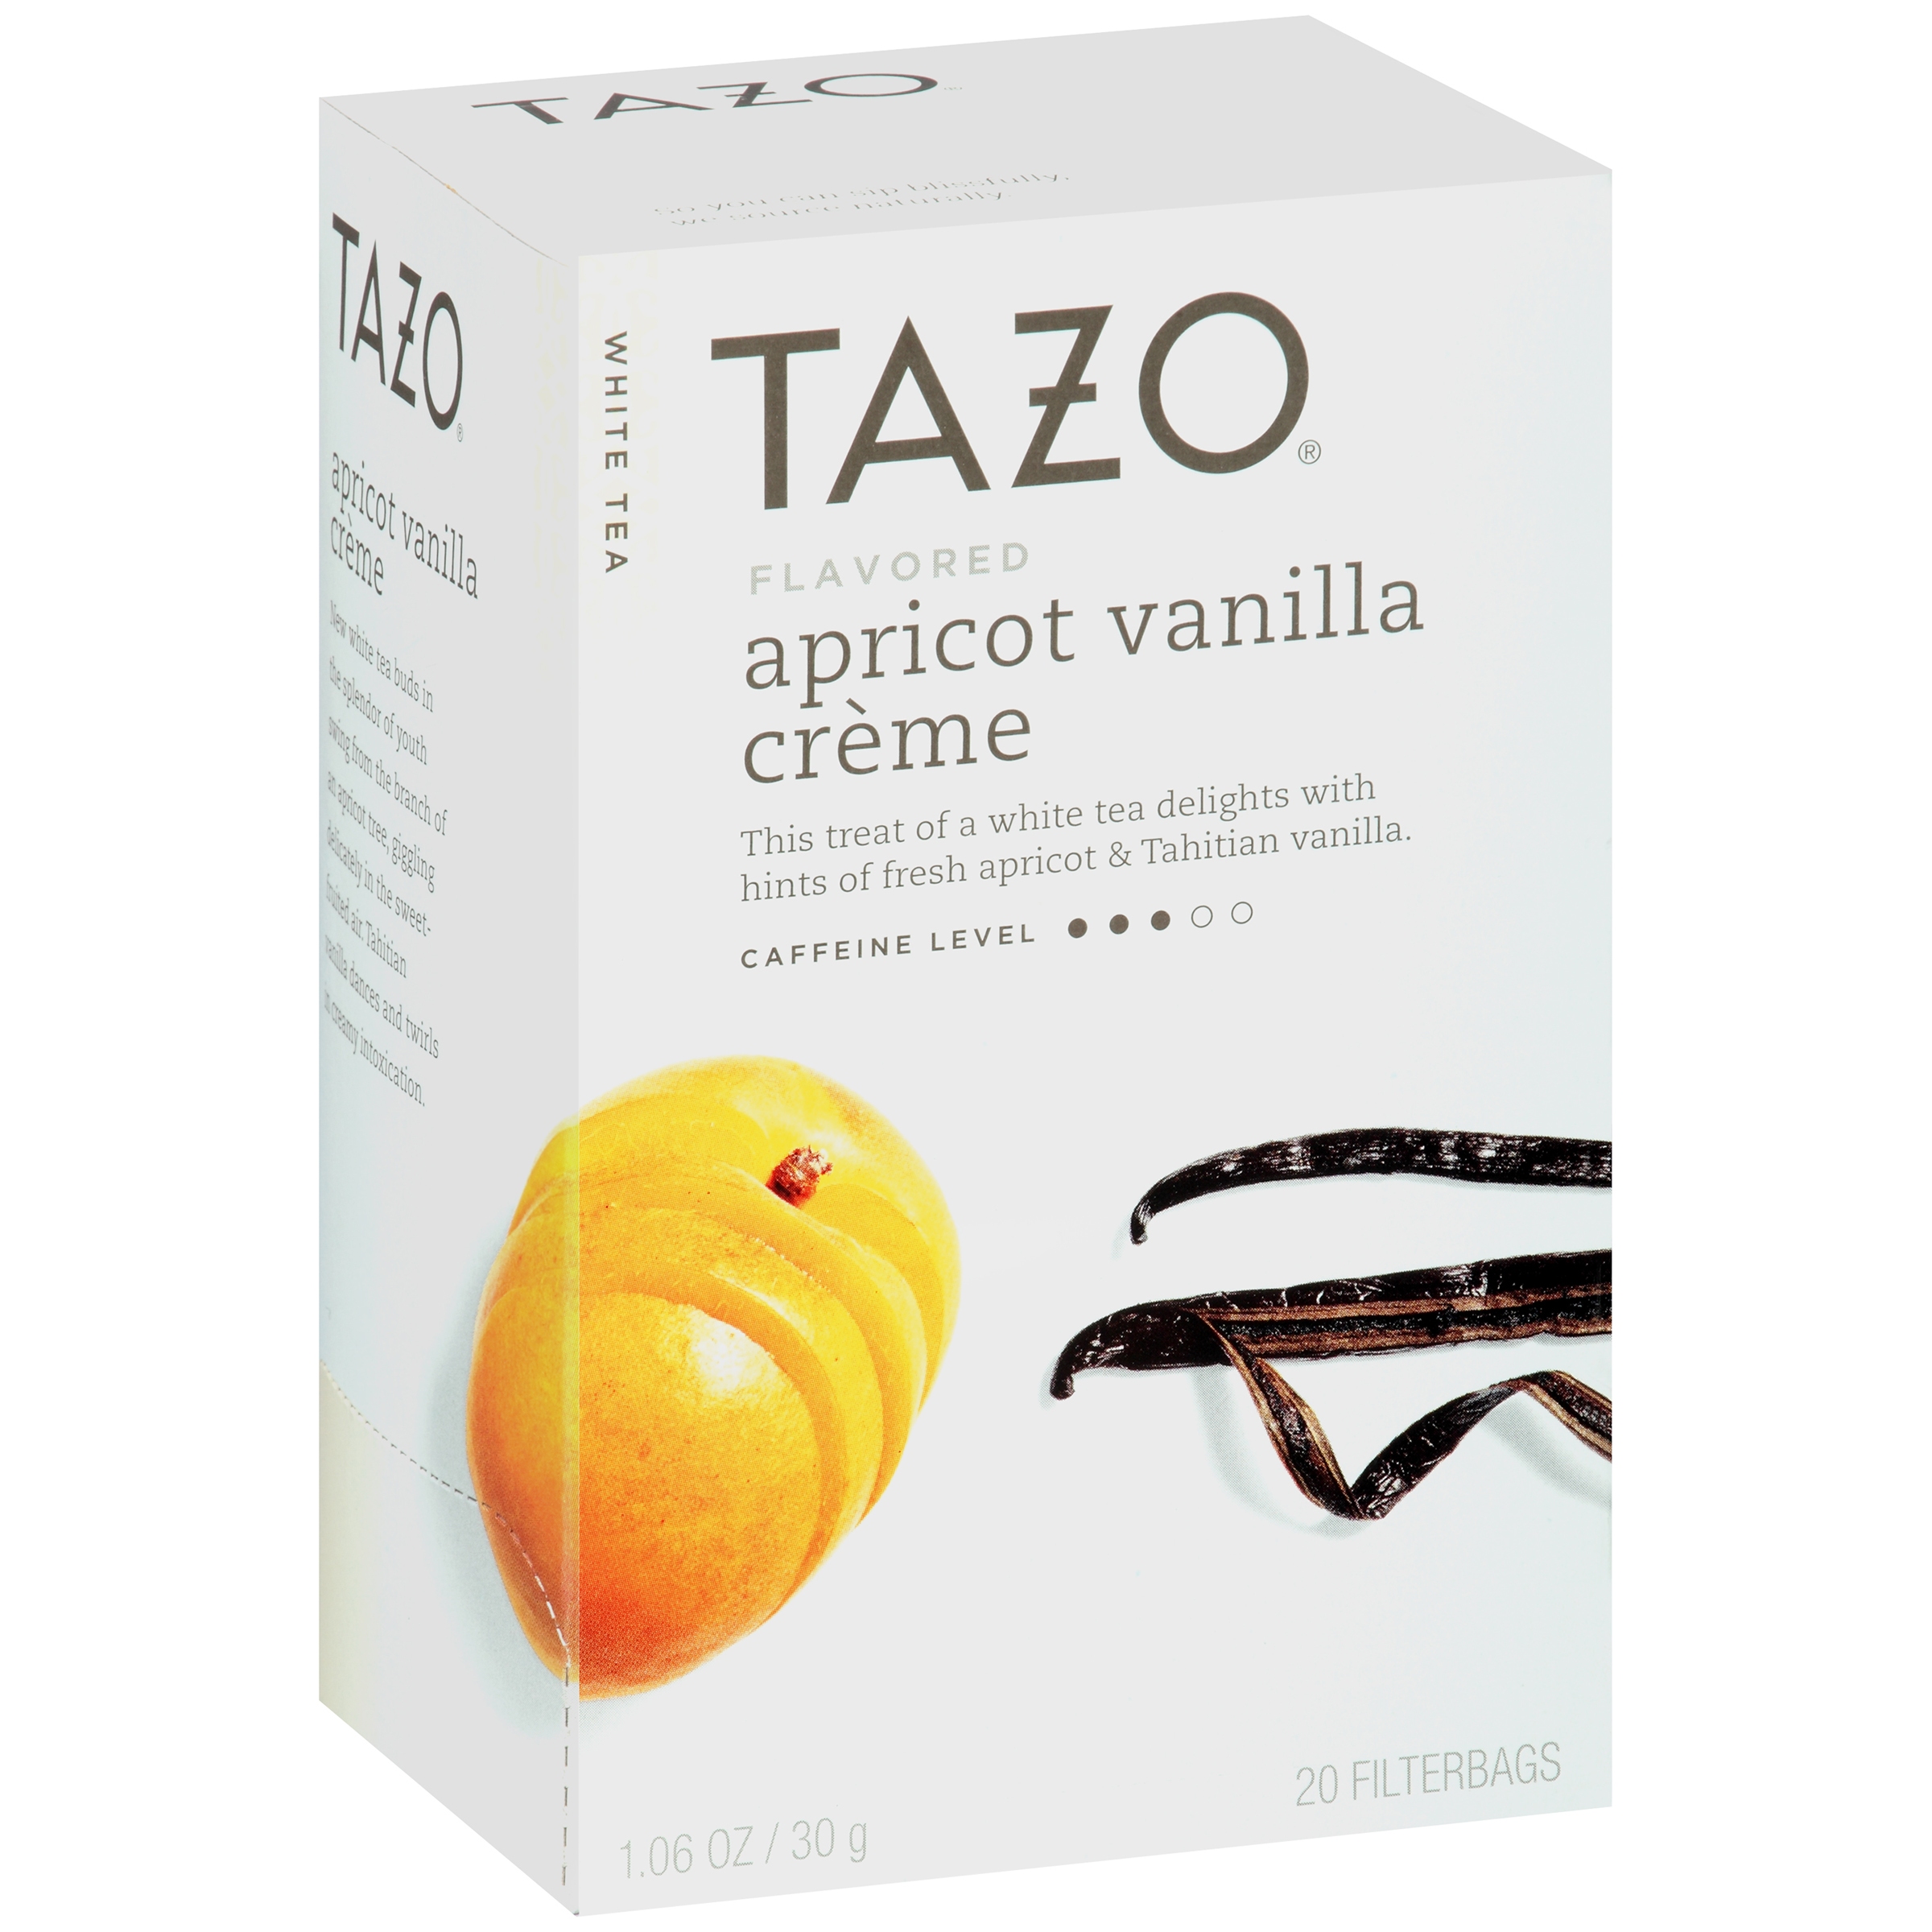 Tazo Apricot Vanilla Crème Flavored White Tea, 20 Count - image 1 of 3